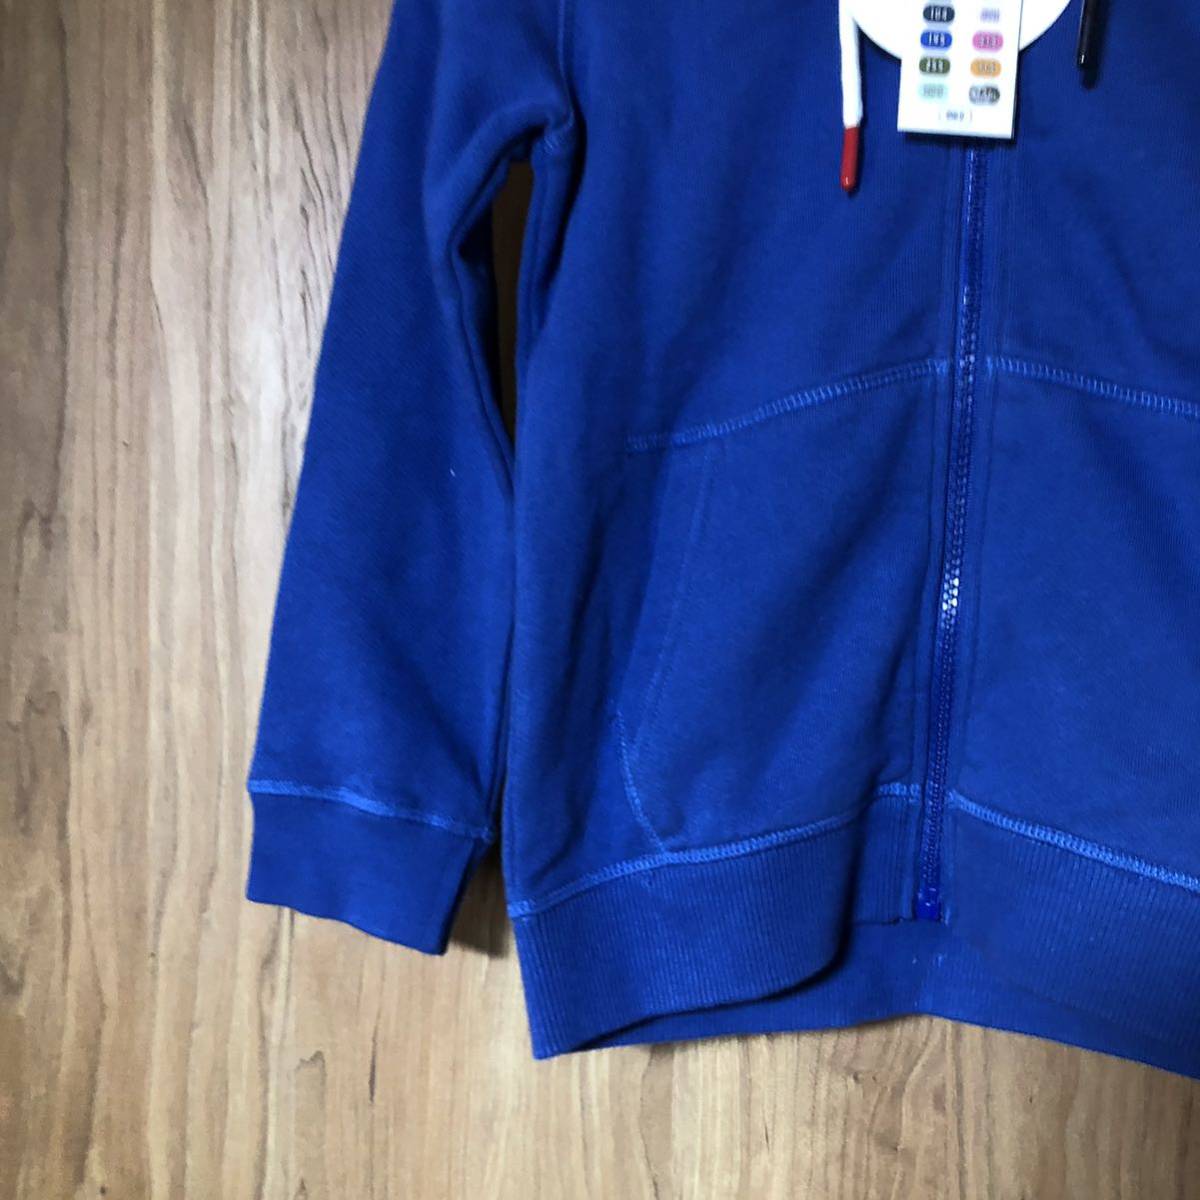  рекомендуемая розничная цена 16000  йен   высокое качество   розничный товар   JOTT Kids  ребенок  для   Sweat  ... парка   мужчина  женщина  ... для  ... ...  голубой 6/8